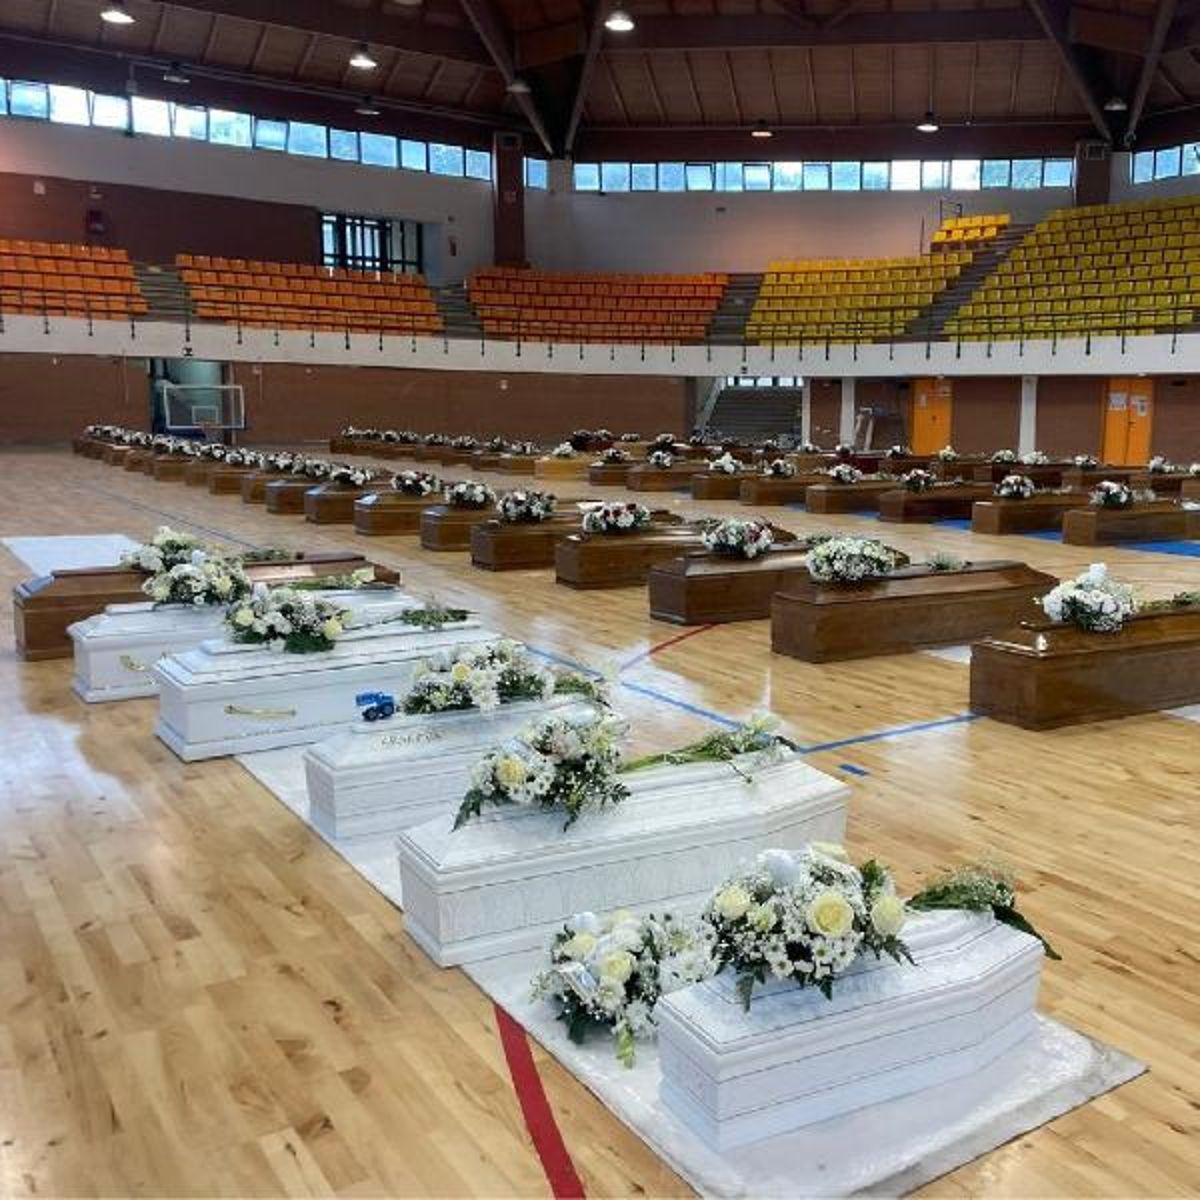 İtalya'da göçmenlerin tabutlarıyla dolan spor salonu, cenaze salonuna dönüştü